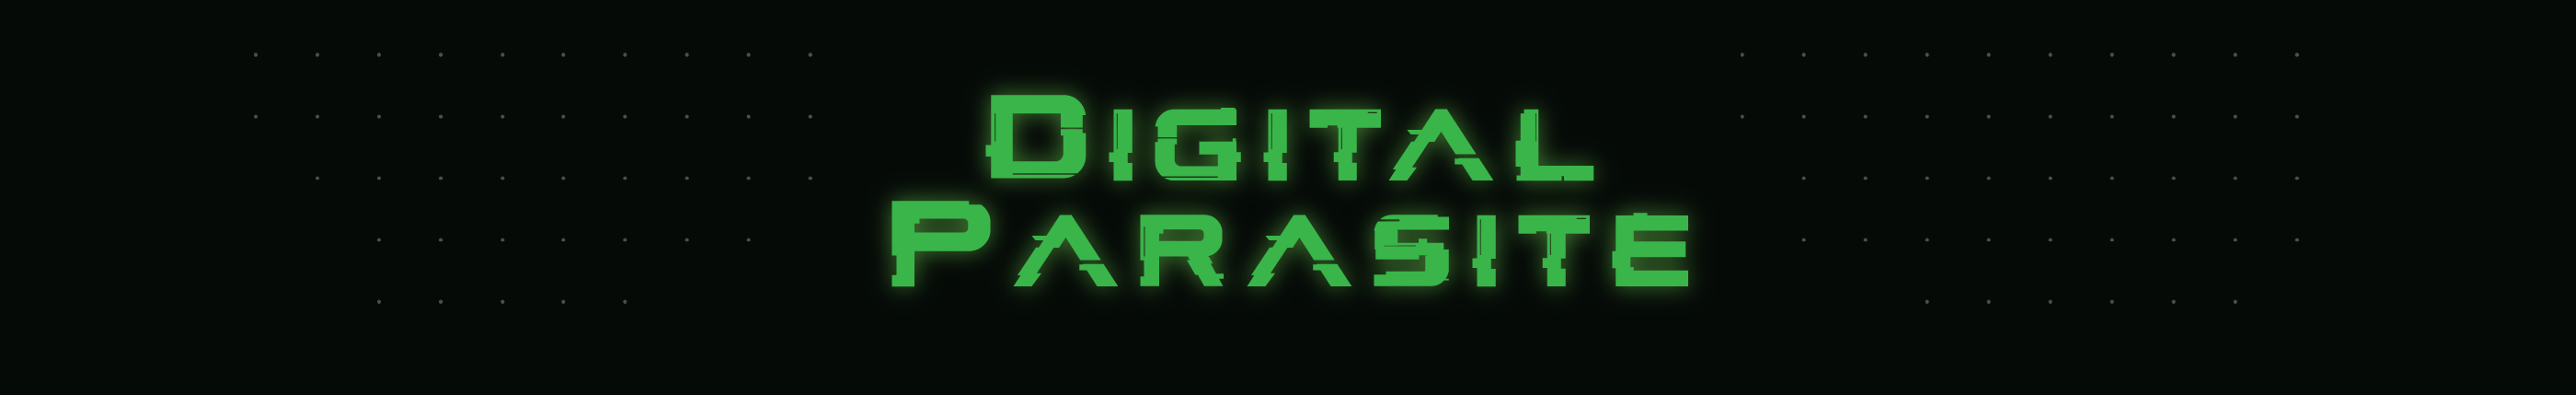 Digital Parasite